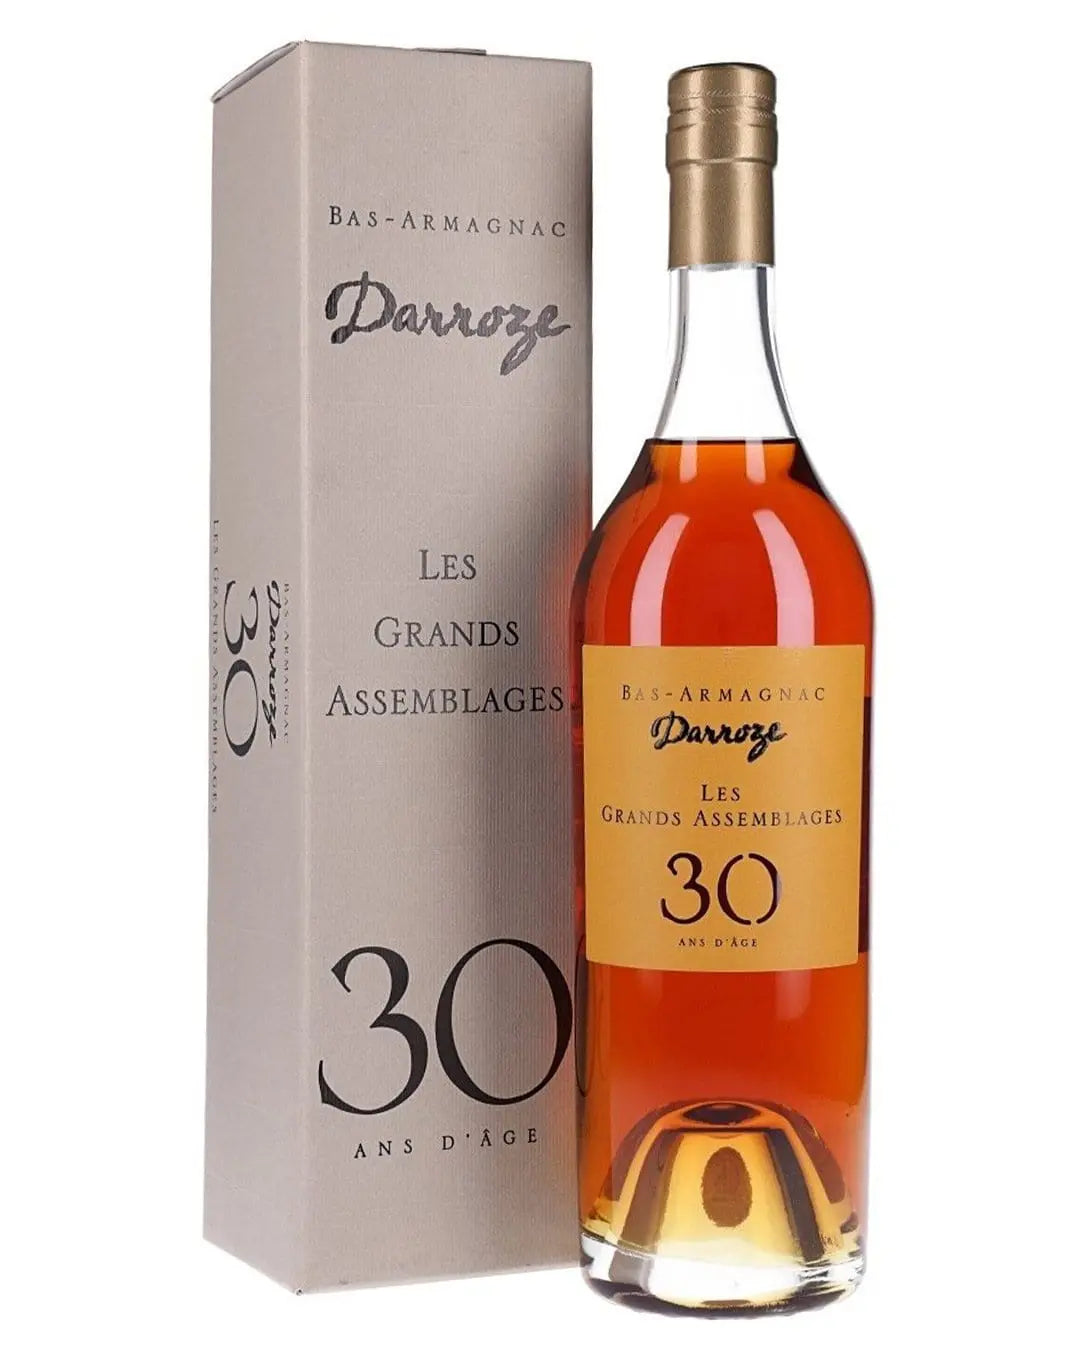 Darroze Les Grands Assemblages 30 Year Old Armagnac, 70 cl Cognac & Brandy